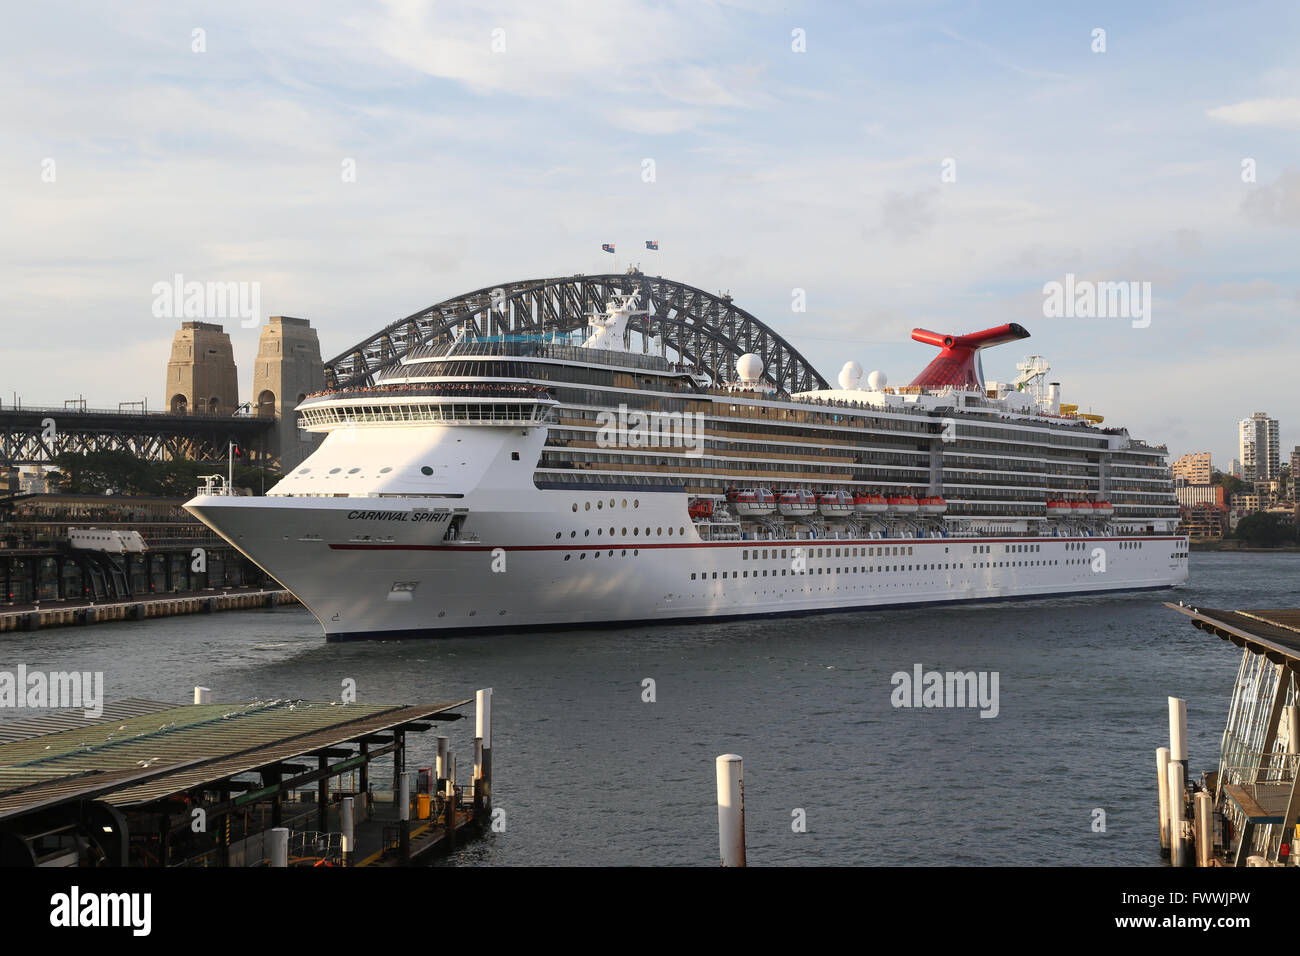 Sydney, Australie. 2 mars 2016. Le Carnival Spirit bateau de croisière est arrivé à Sydney et accosté au terminal passagers d'outre-mer. Banque D'Images